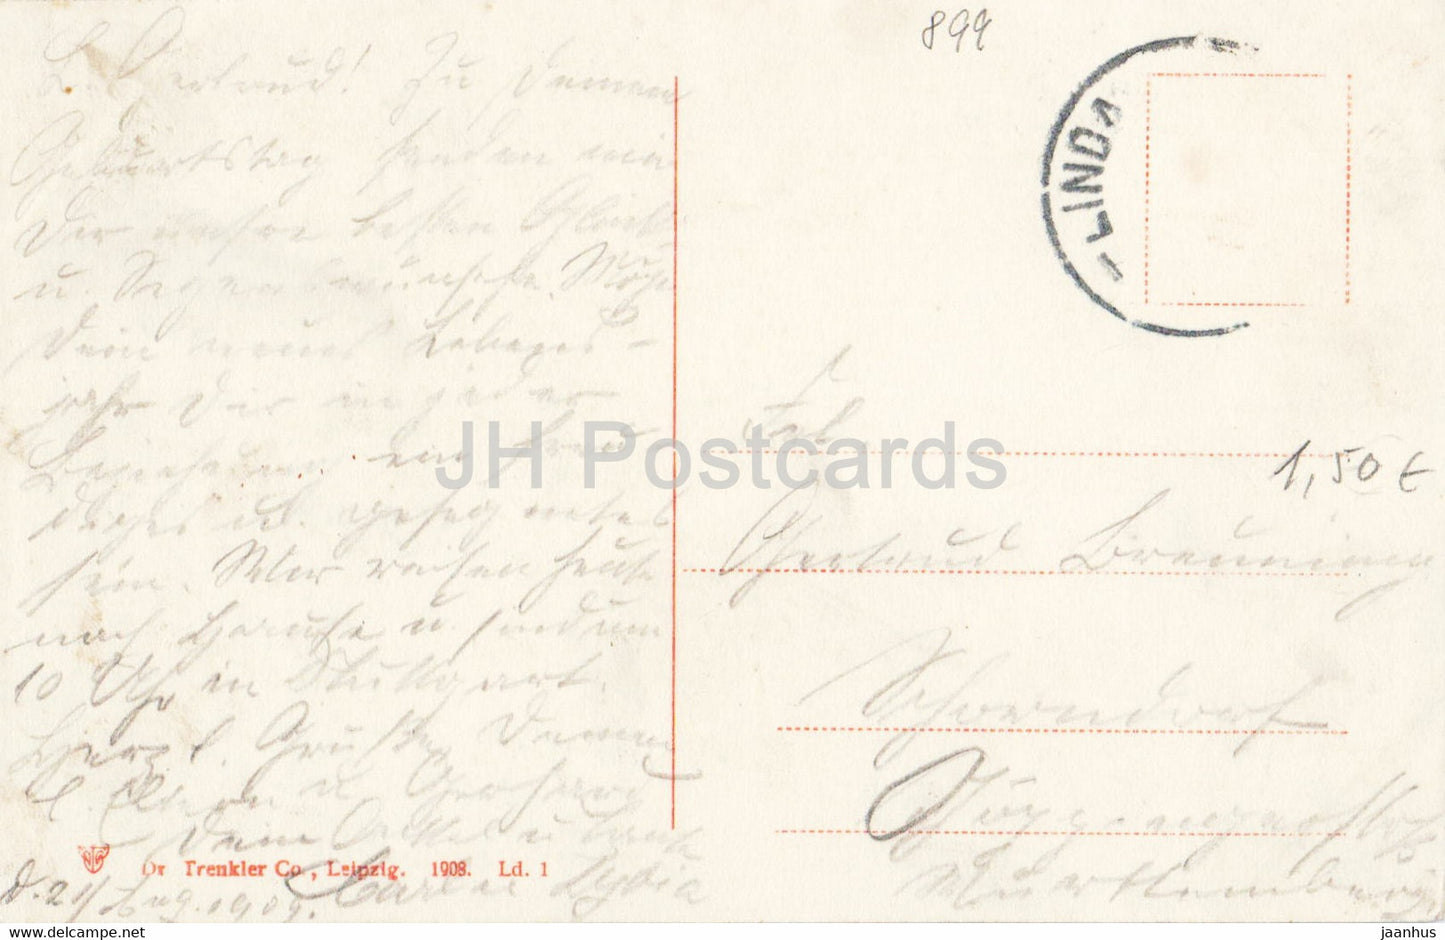 Lindau i B - Hafeneinfahrt - Leuchtturm - Hafen - Schiff - alte Postkarte - 1908 - Deutschland - gebraucht